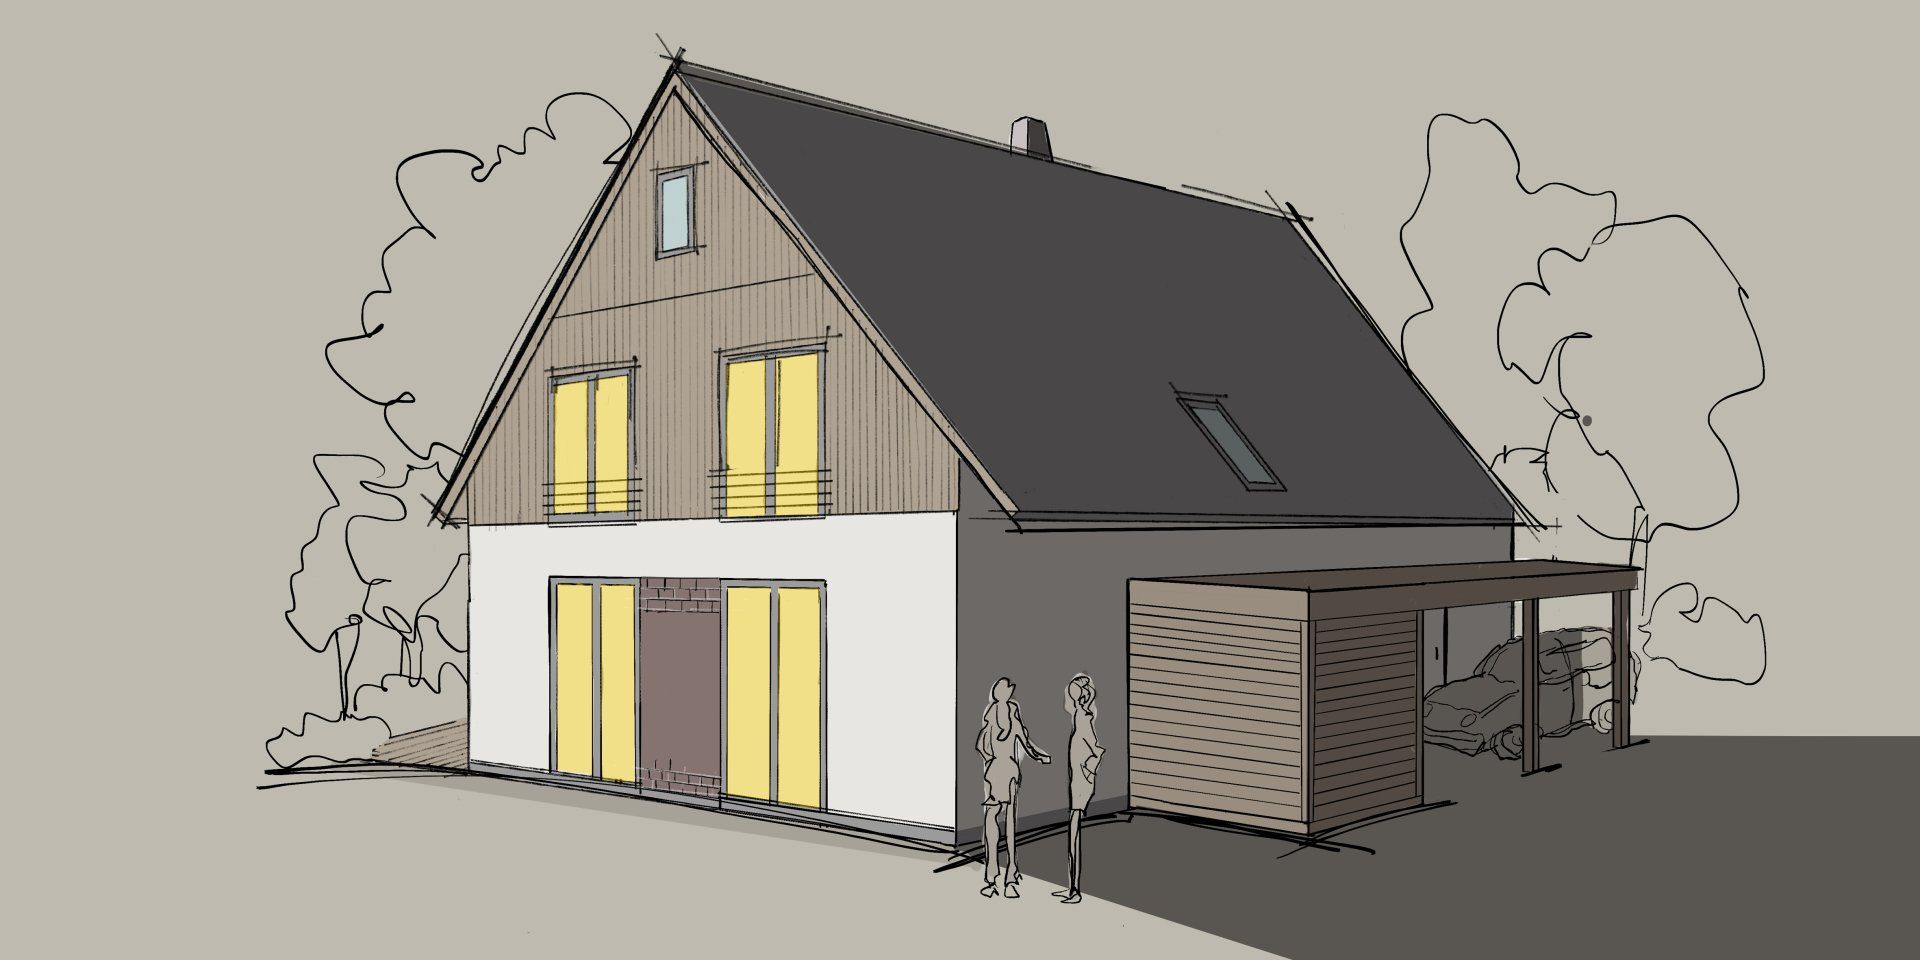 Projekt: Errichtung eines Wohnhauses mit offener Garage